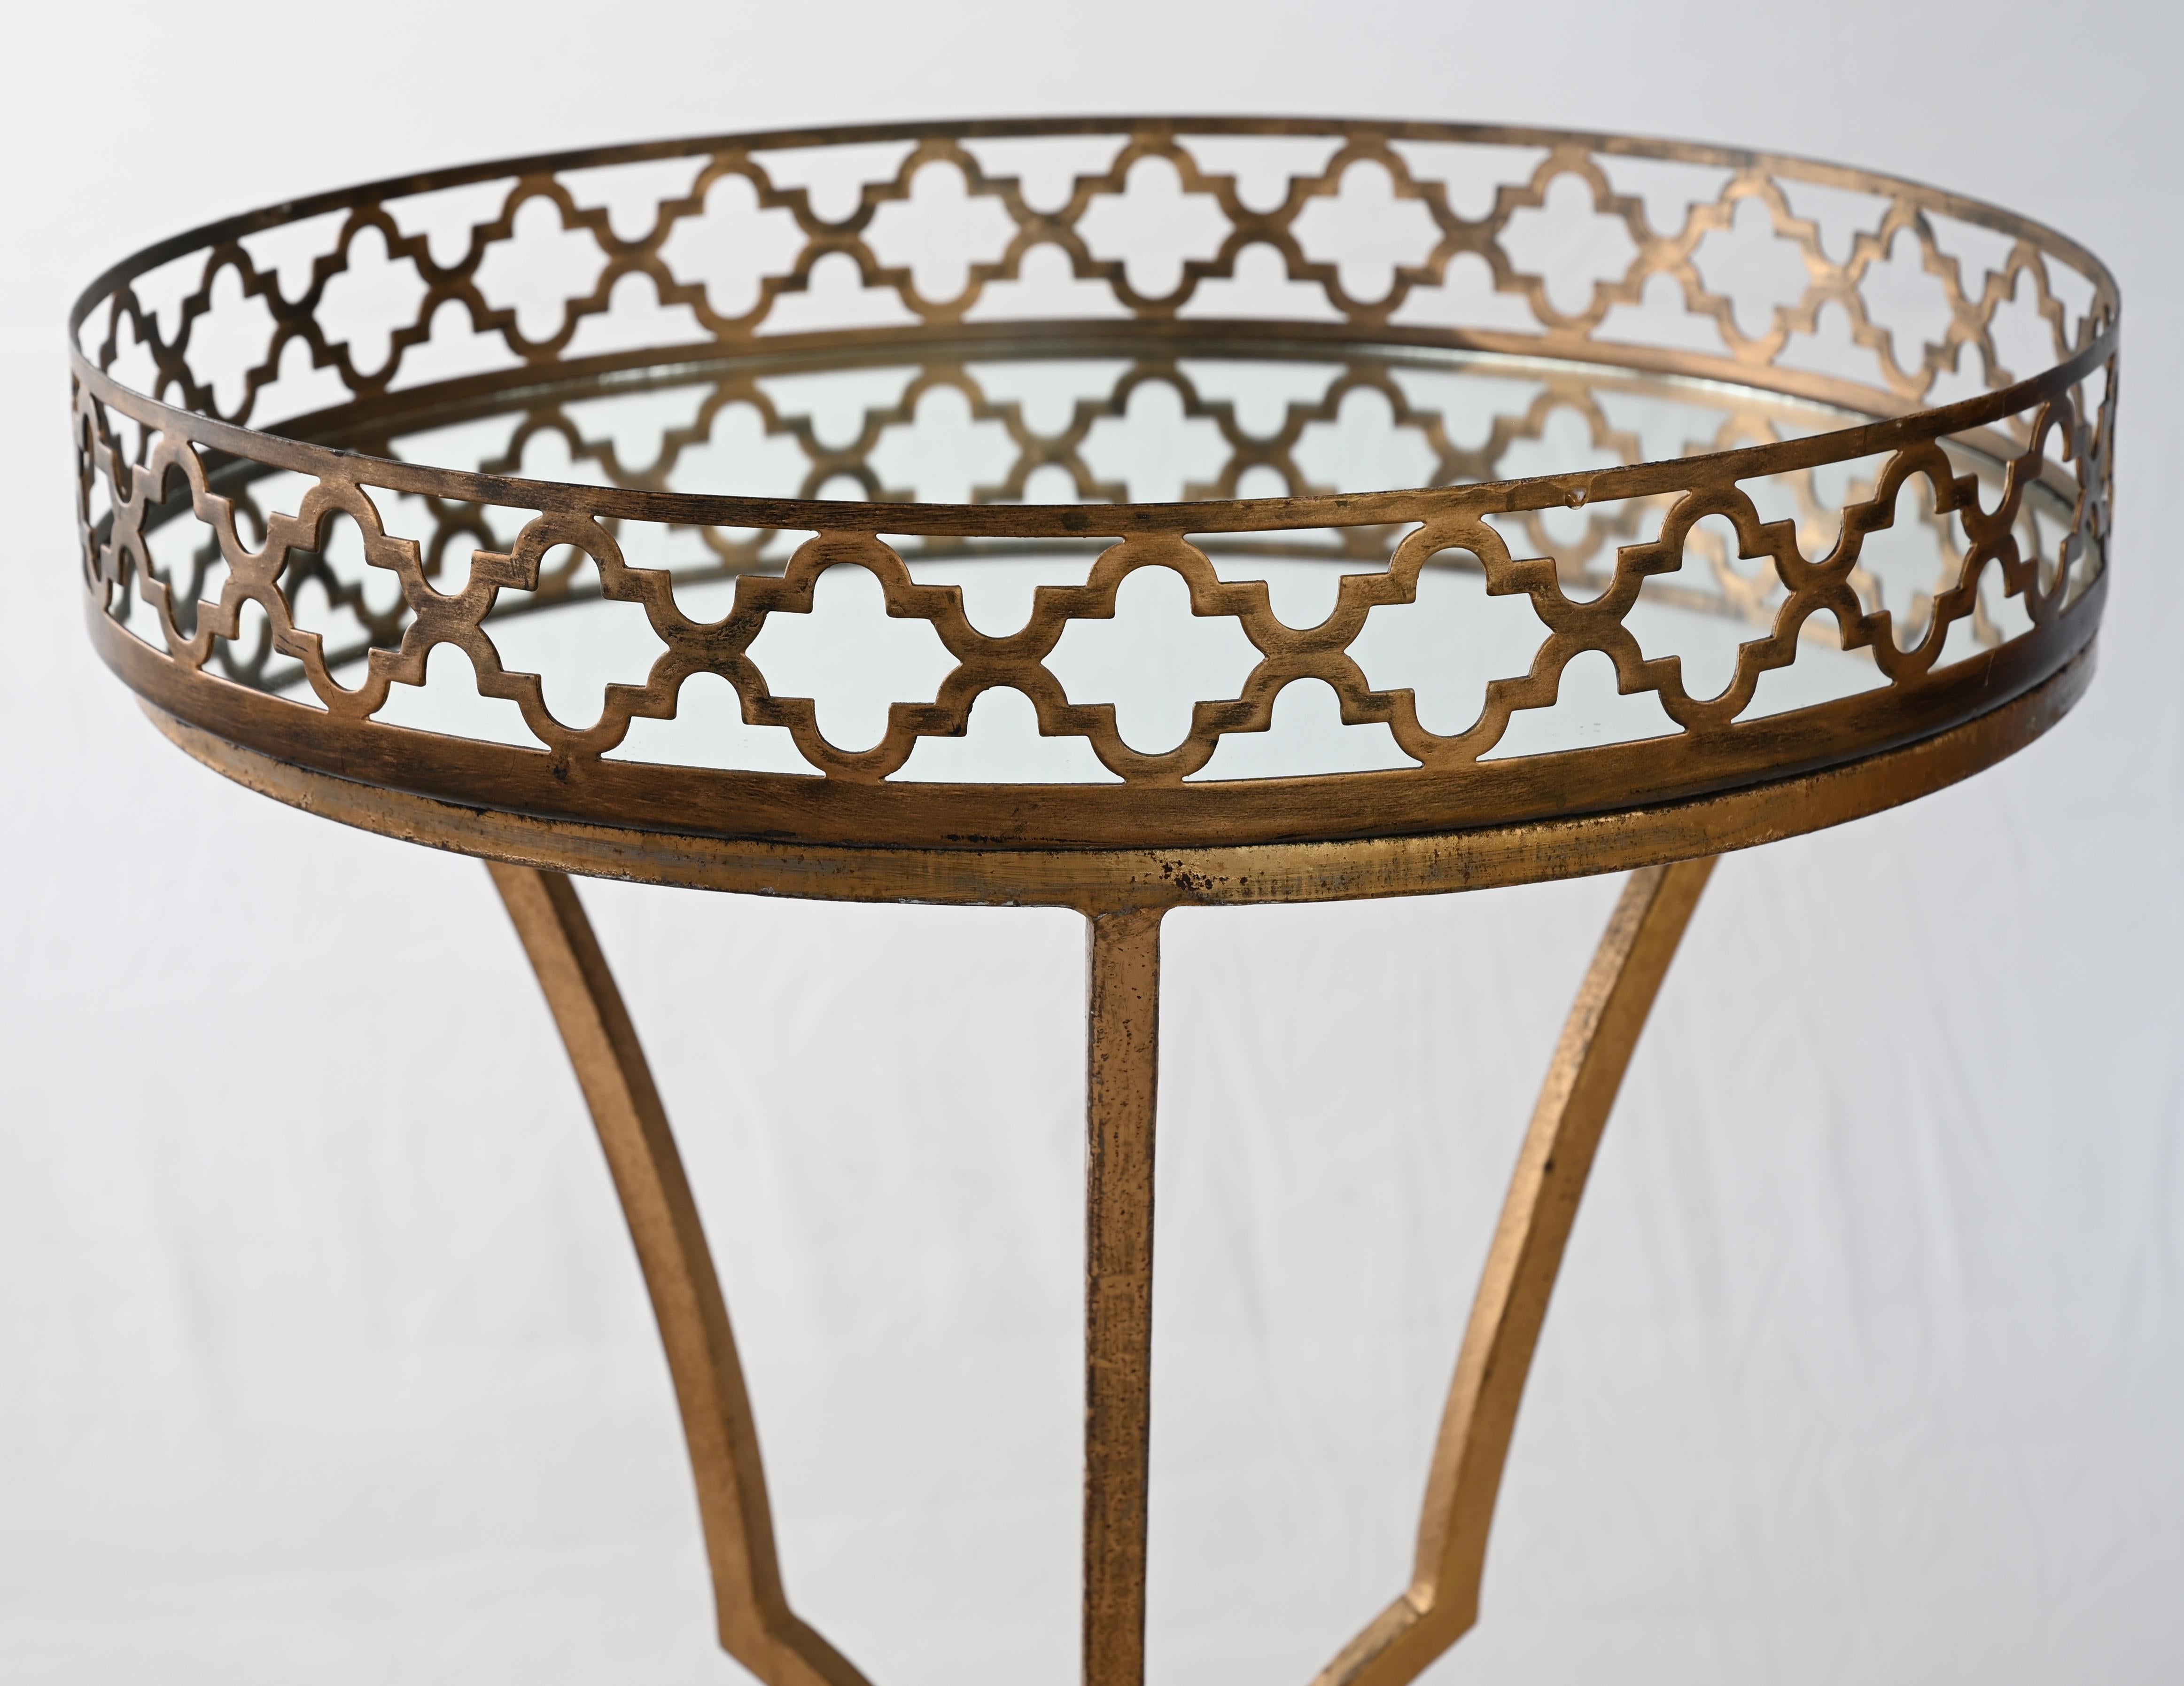 Ein Beistelltisch oder Beistelltisch aus polierter Bronze von hoher Qualität. 
Dieser Tisch im Hollywood-Regency-Stil hat eine verspiegelte Platte, die Ihre Lieblingsblumenvase, ein dekoratives Keramikobjekt oder einfach alles zur Geltung bringt.